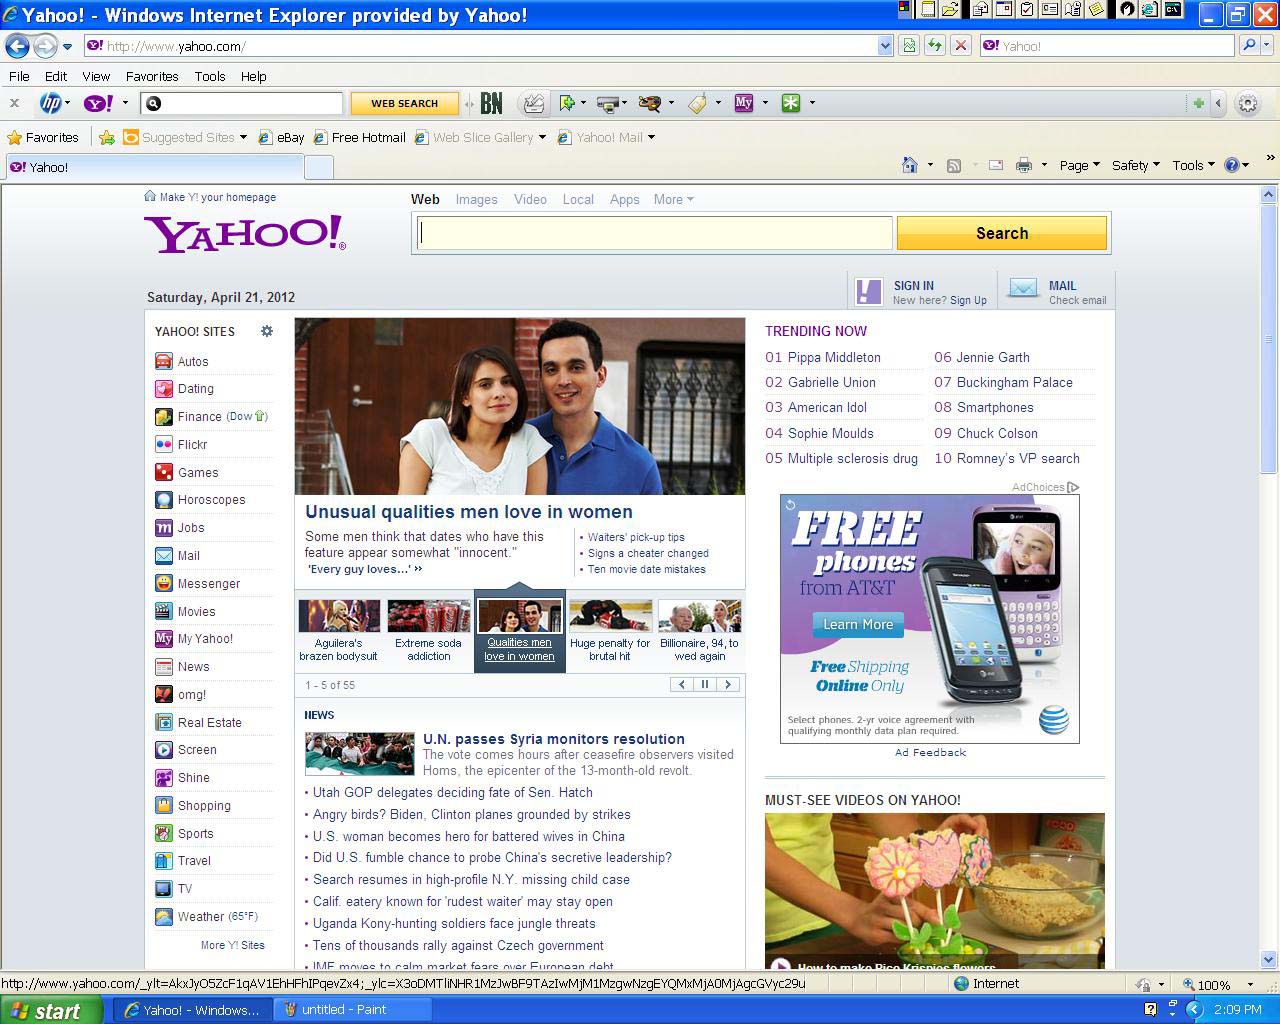 Print Ad on Yahoo